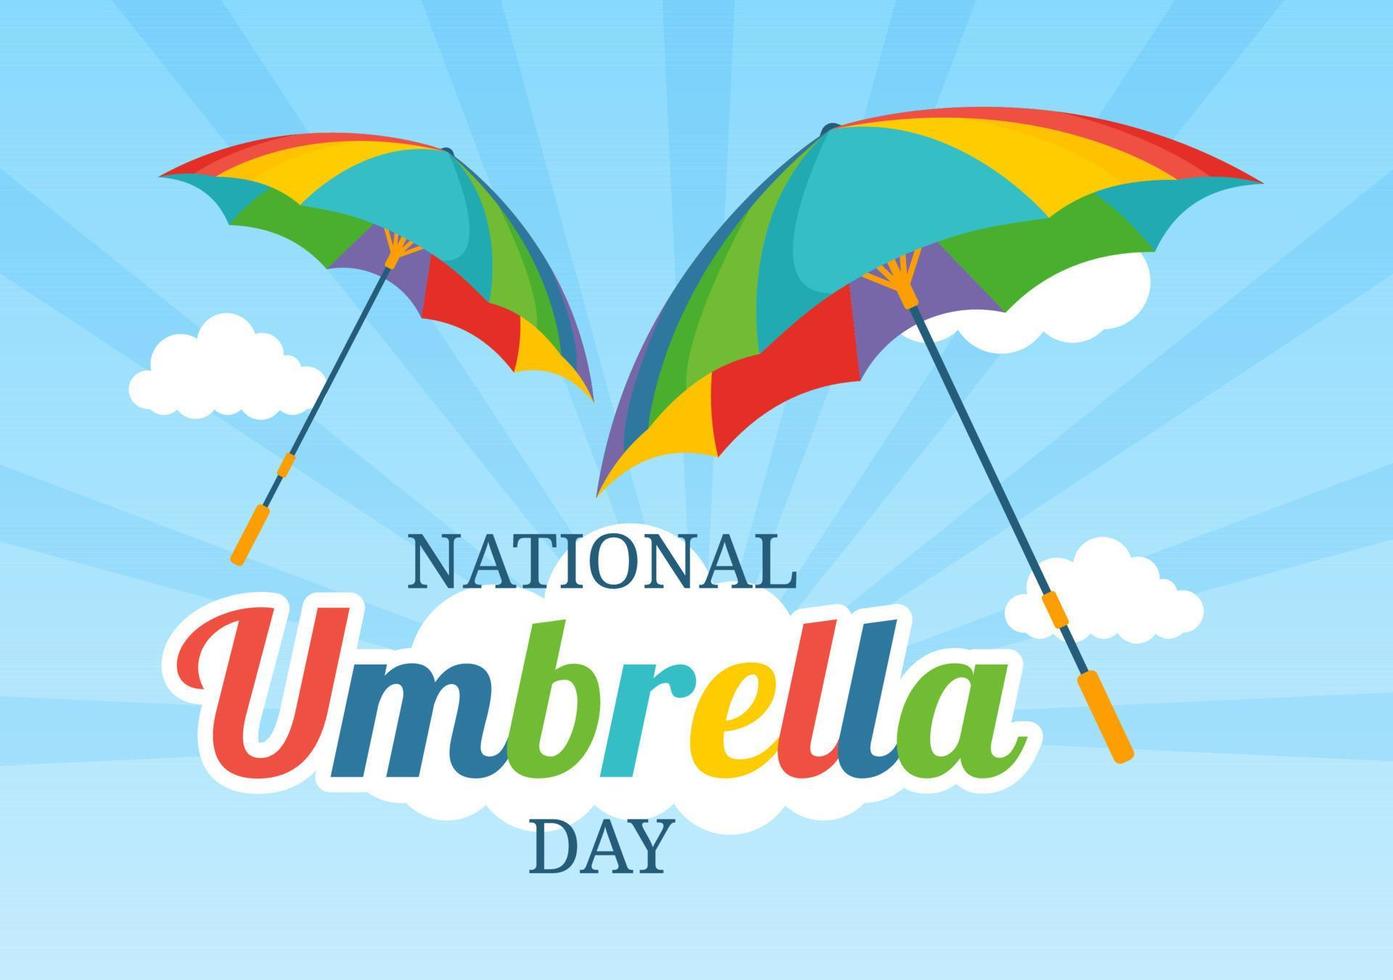 nationell paraply dag firande på februari 10:e till skydda oss från regn och Sol i platt tecknad serie hand dragen mall illustration vektor